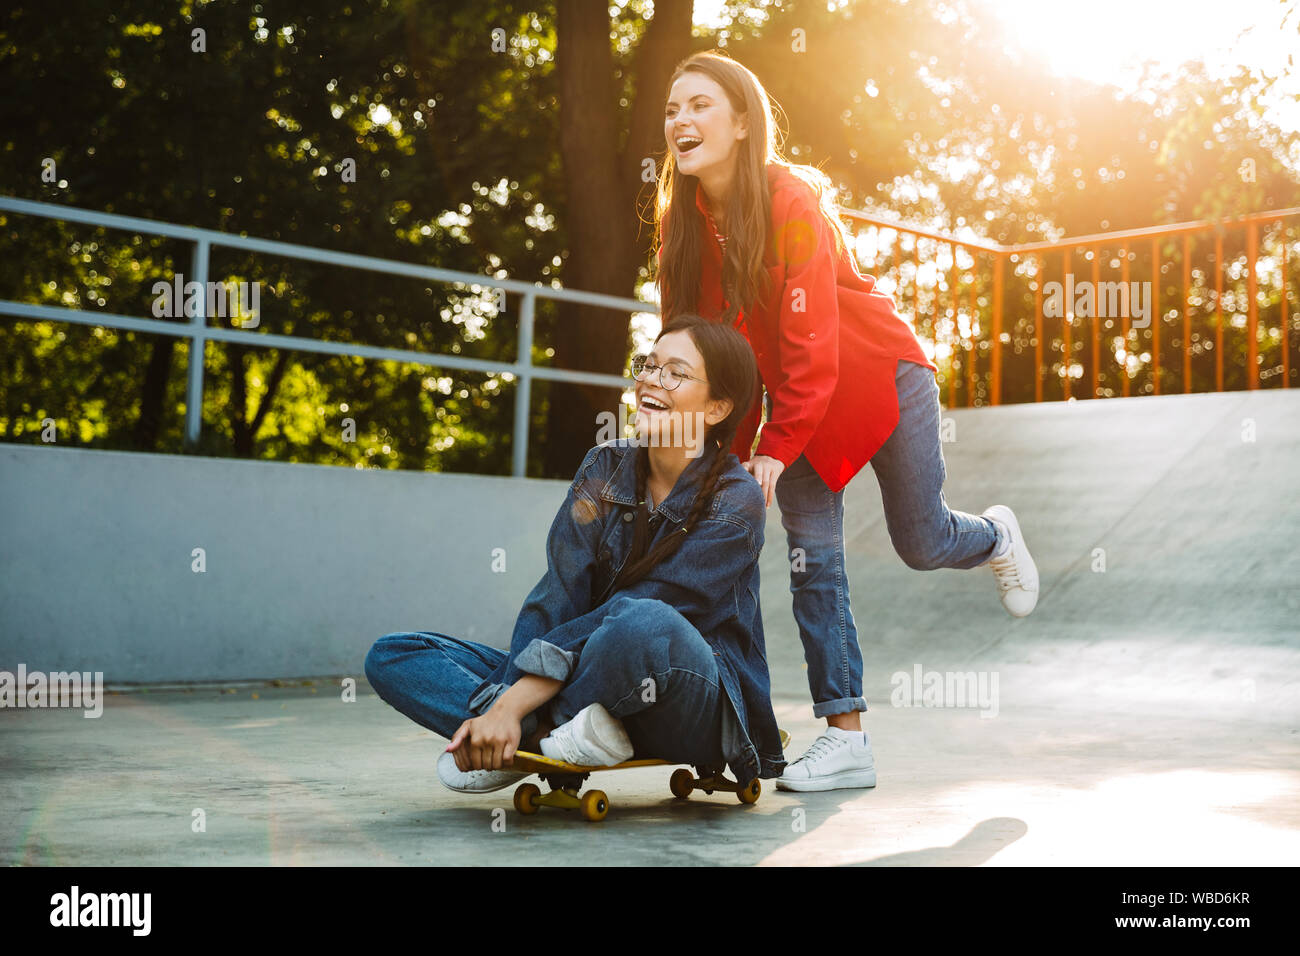 Image de deux filles de joie vêtu de vêtements en denim de rire et équitation skateboard ensemble dans skate park Banque D'Images